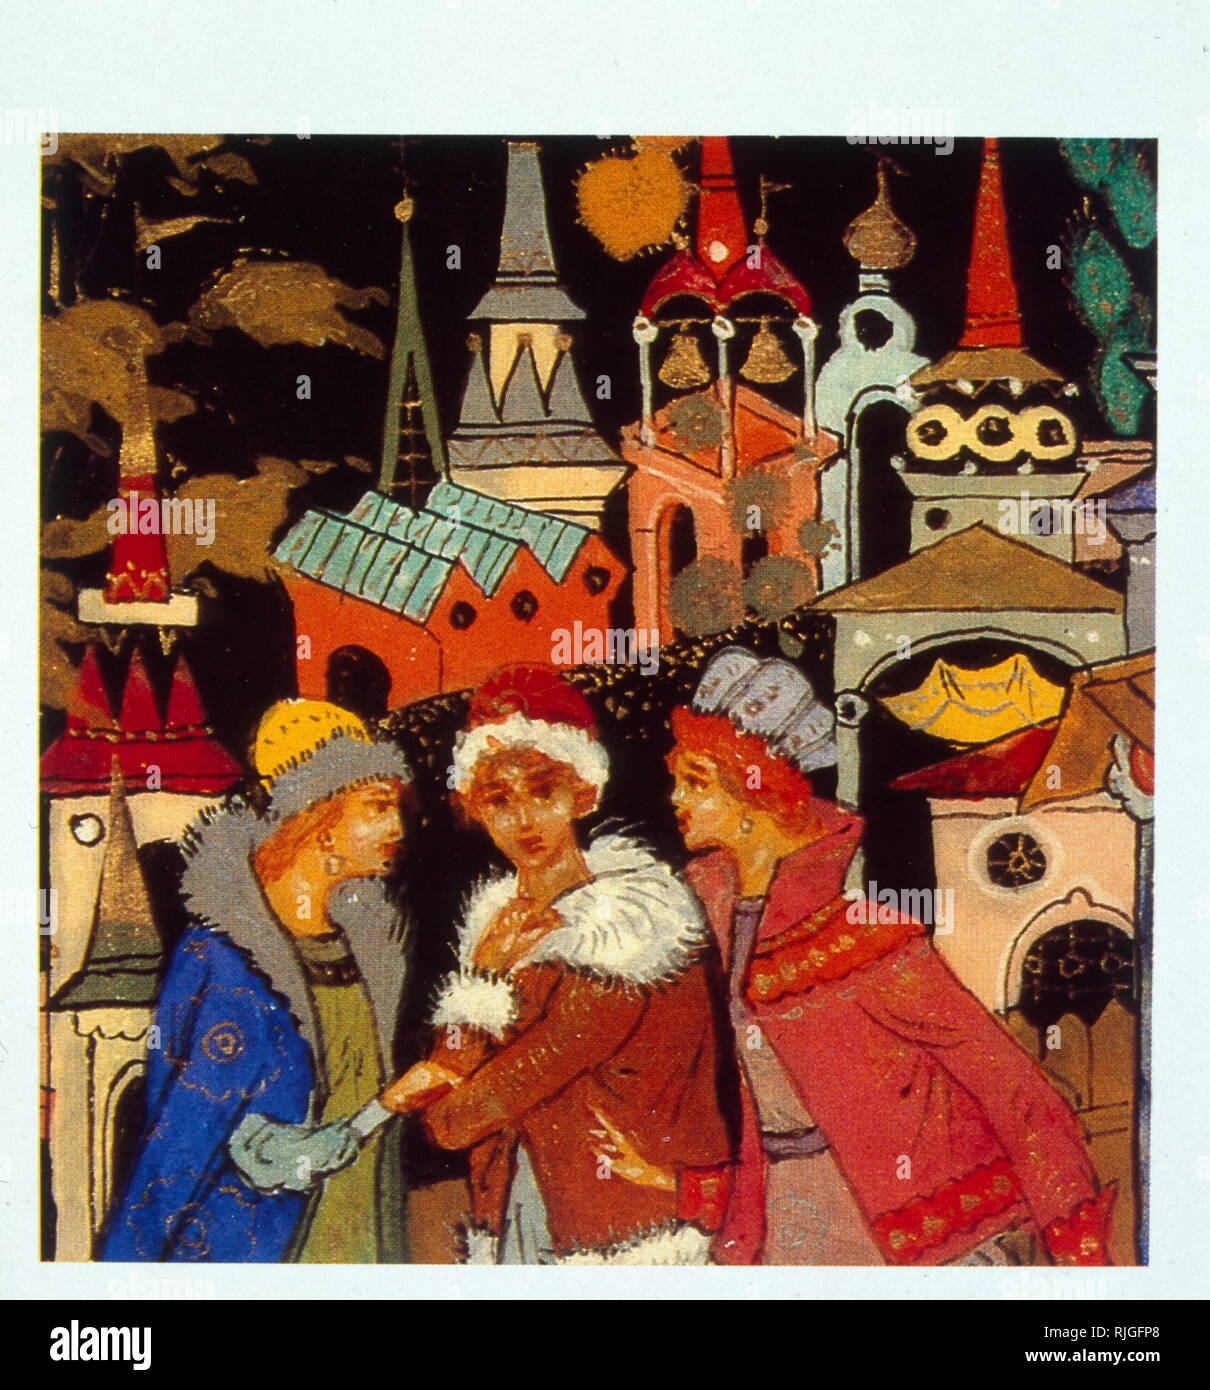 Eine russische "Palekh' lackiert Box 1968. zeigt eine Szene aus der mittelalterlichen Geschichte Russlands. Russische Lackkunst von der Kunst der Ikonenmalerei, die an einem Ende mit dem Zusammenbruch der kaiserlichen Russland kam entwickelt. das Handwerk der Herstellung von pappmaché dekorative Schachteln und Panels entwickelt. Stockfoto